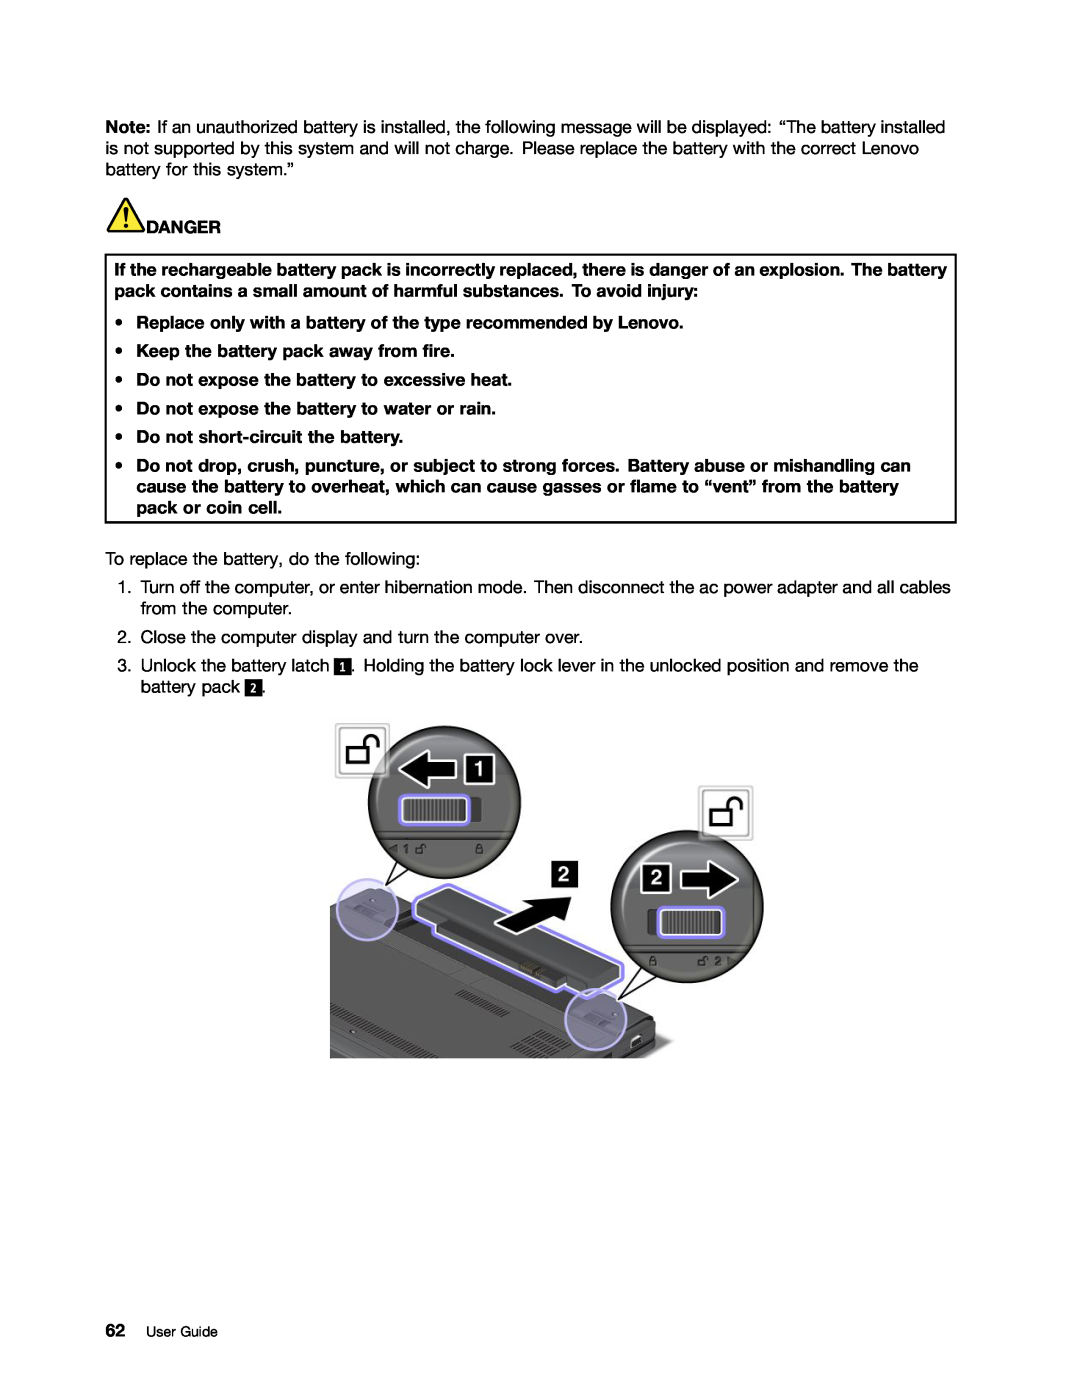 Lenovo X131E manual Do not expose the battery to excessive heat, Do not expose the battery to water or rain, Danger 